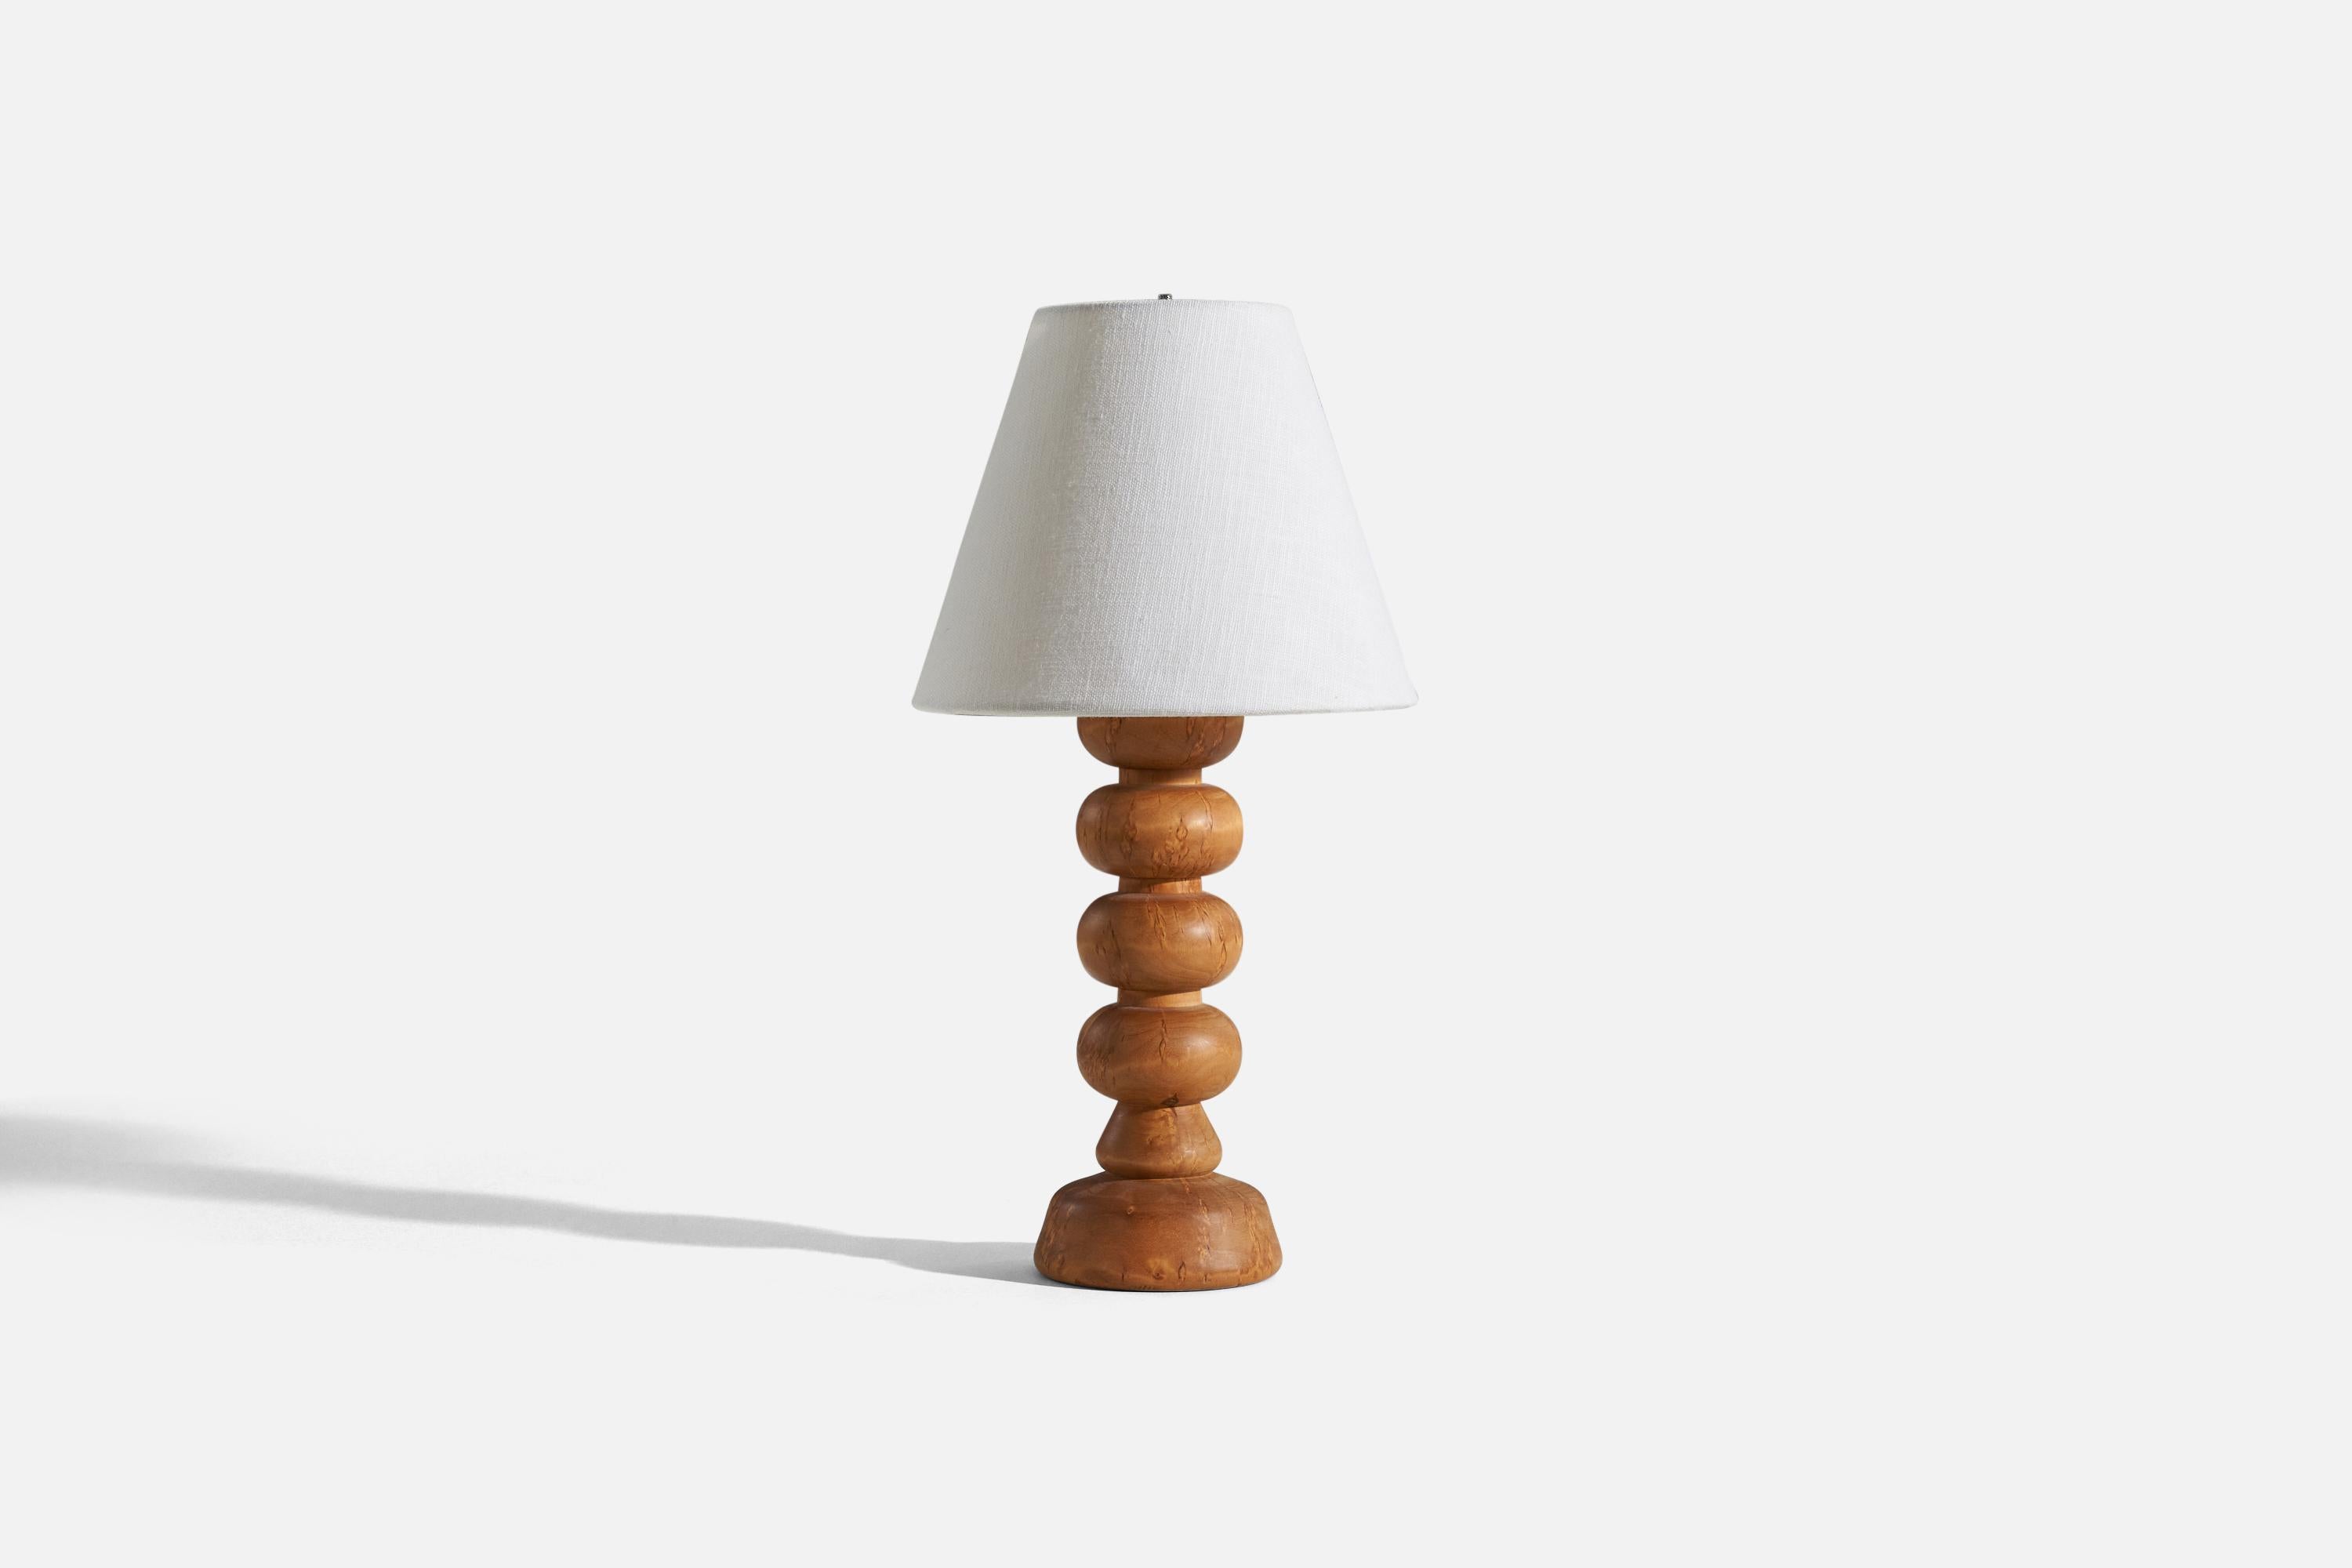 Lampe de table en bois, conçue et produite par un designer suédois, Suède, années 1970.

Vendu sans abat-jour. 
Dimensions de la lampe (pouces) : 12 x 4 x 4 (H x L x P)
Dimensions de l'abat-jour (pouces) : 4 x 8 x 6.75 (T x B x H)
Dimensions de